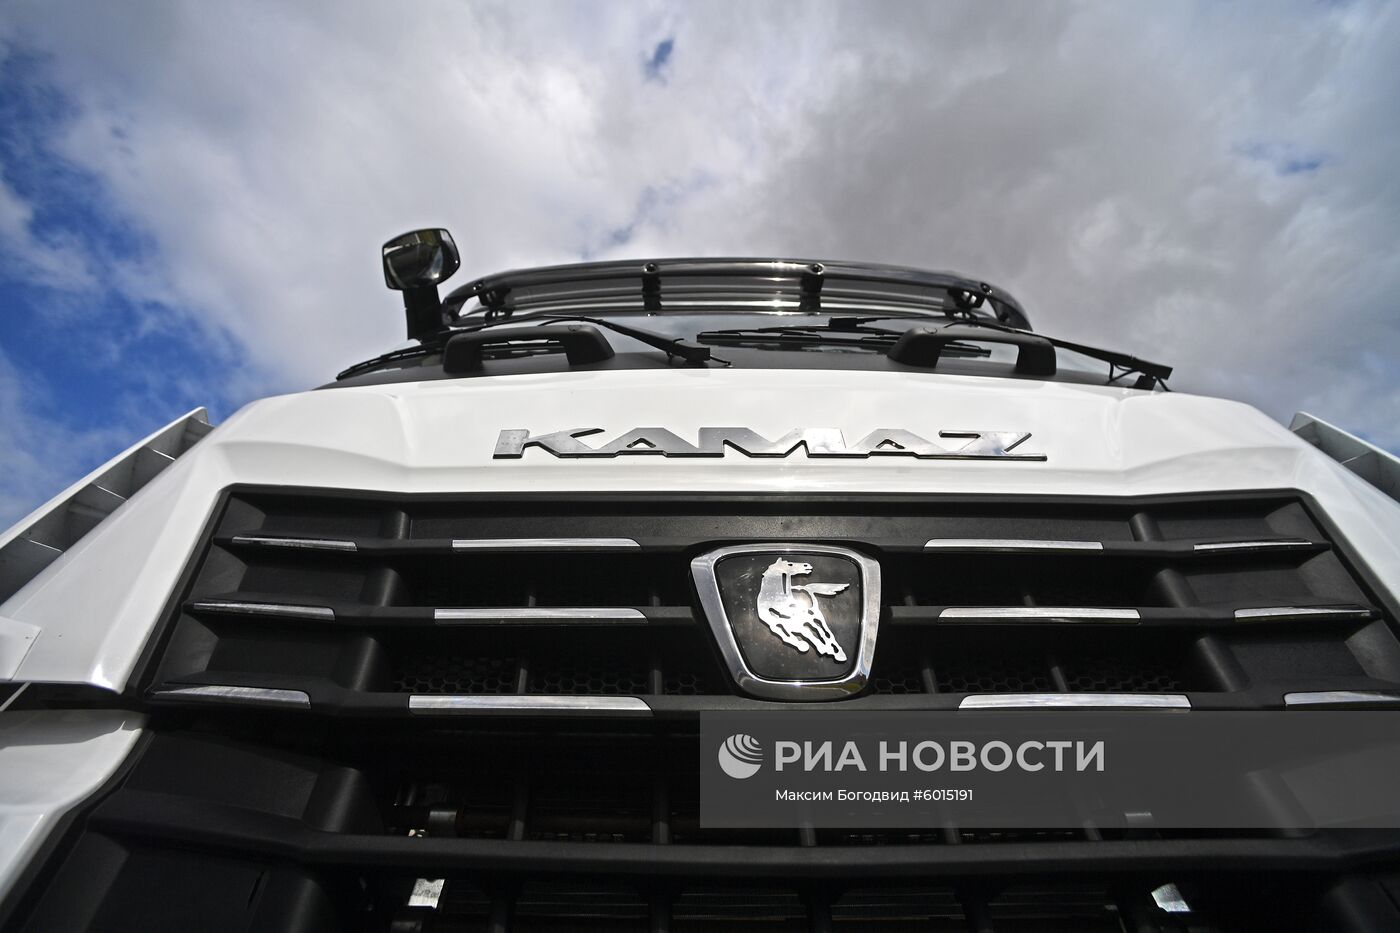 Тест-драйв новой серии автомобилей КАМАЗ-54901